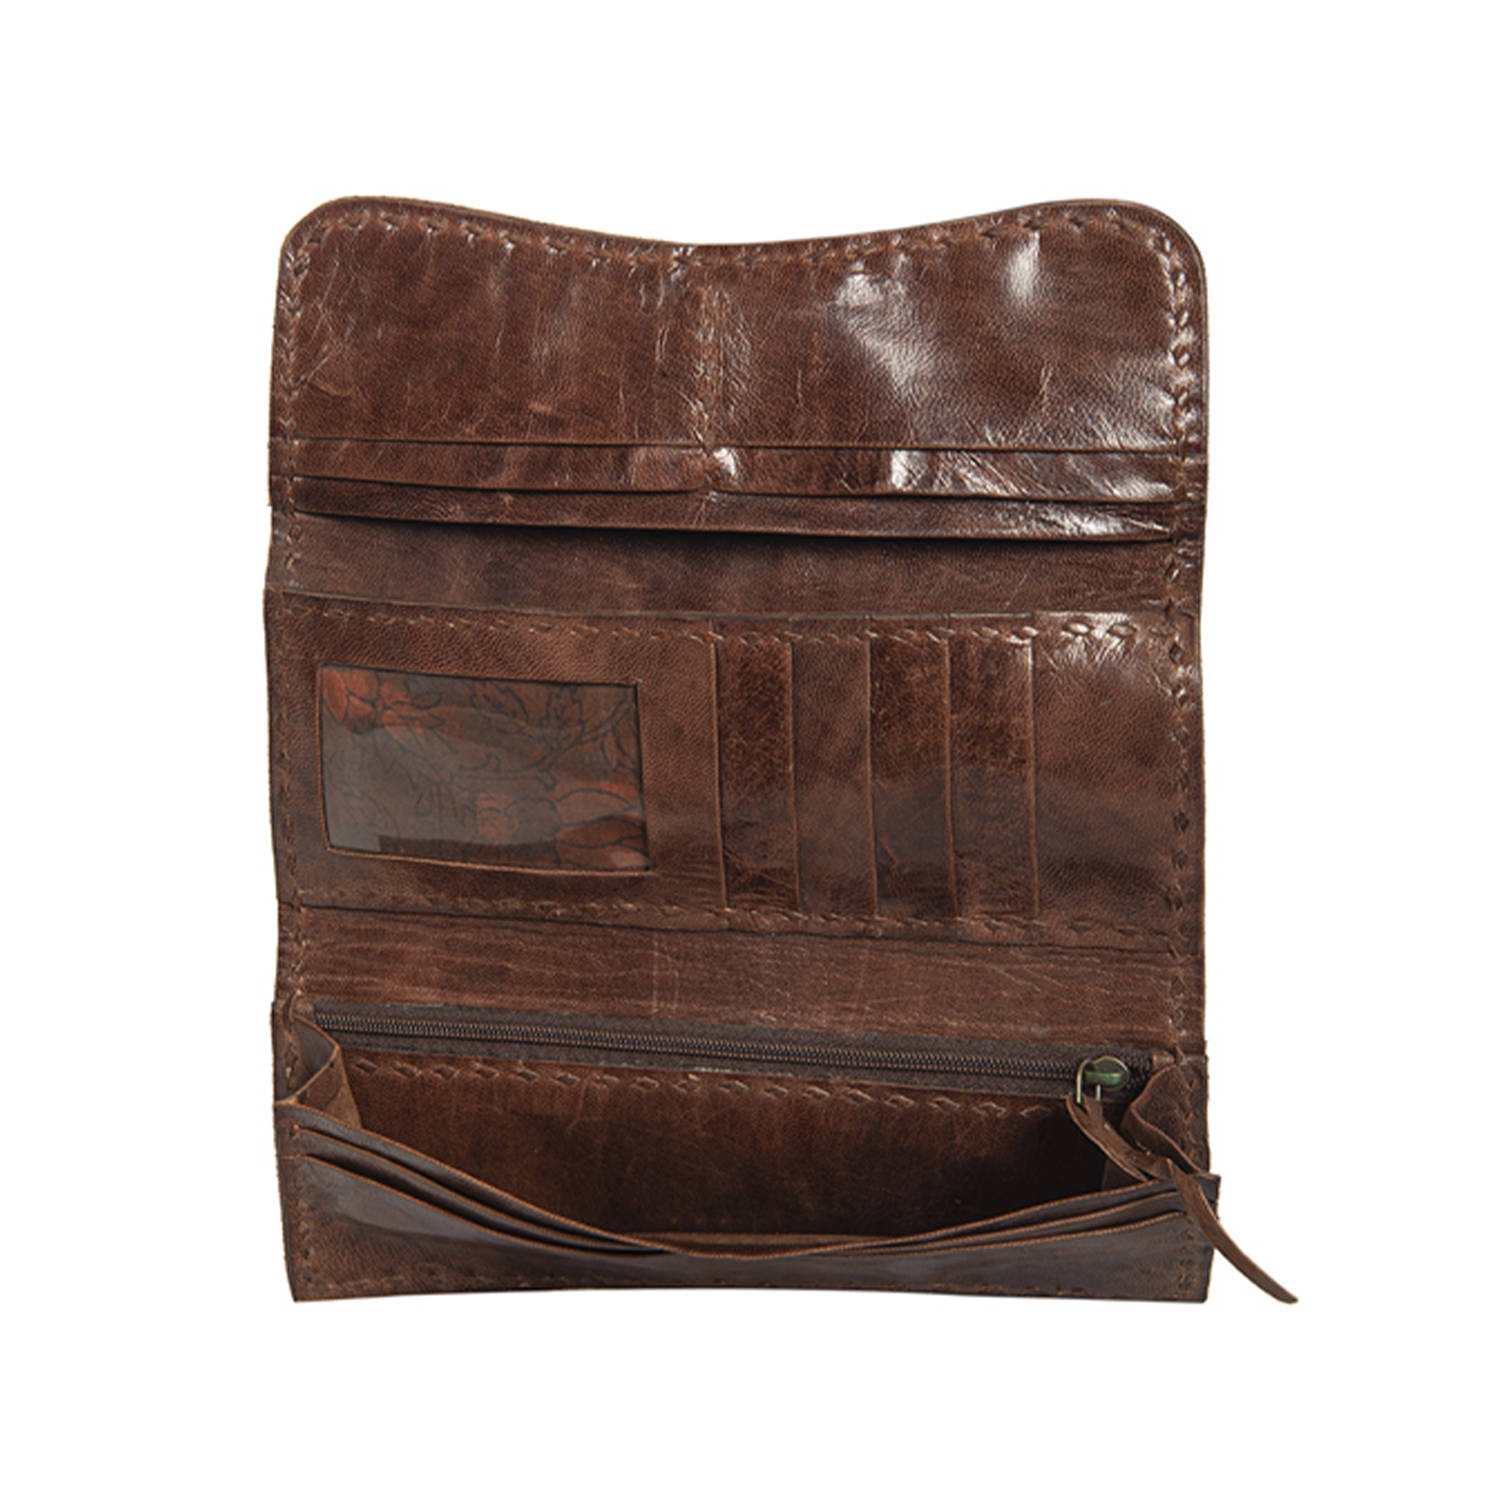 Genuine Hand-Tooled Leather Handbags, Finest Handmade Leather Purses – ALLE  Handbags